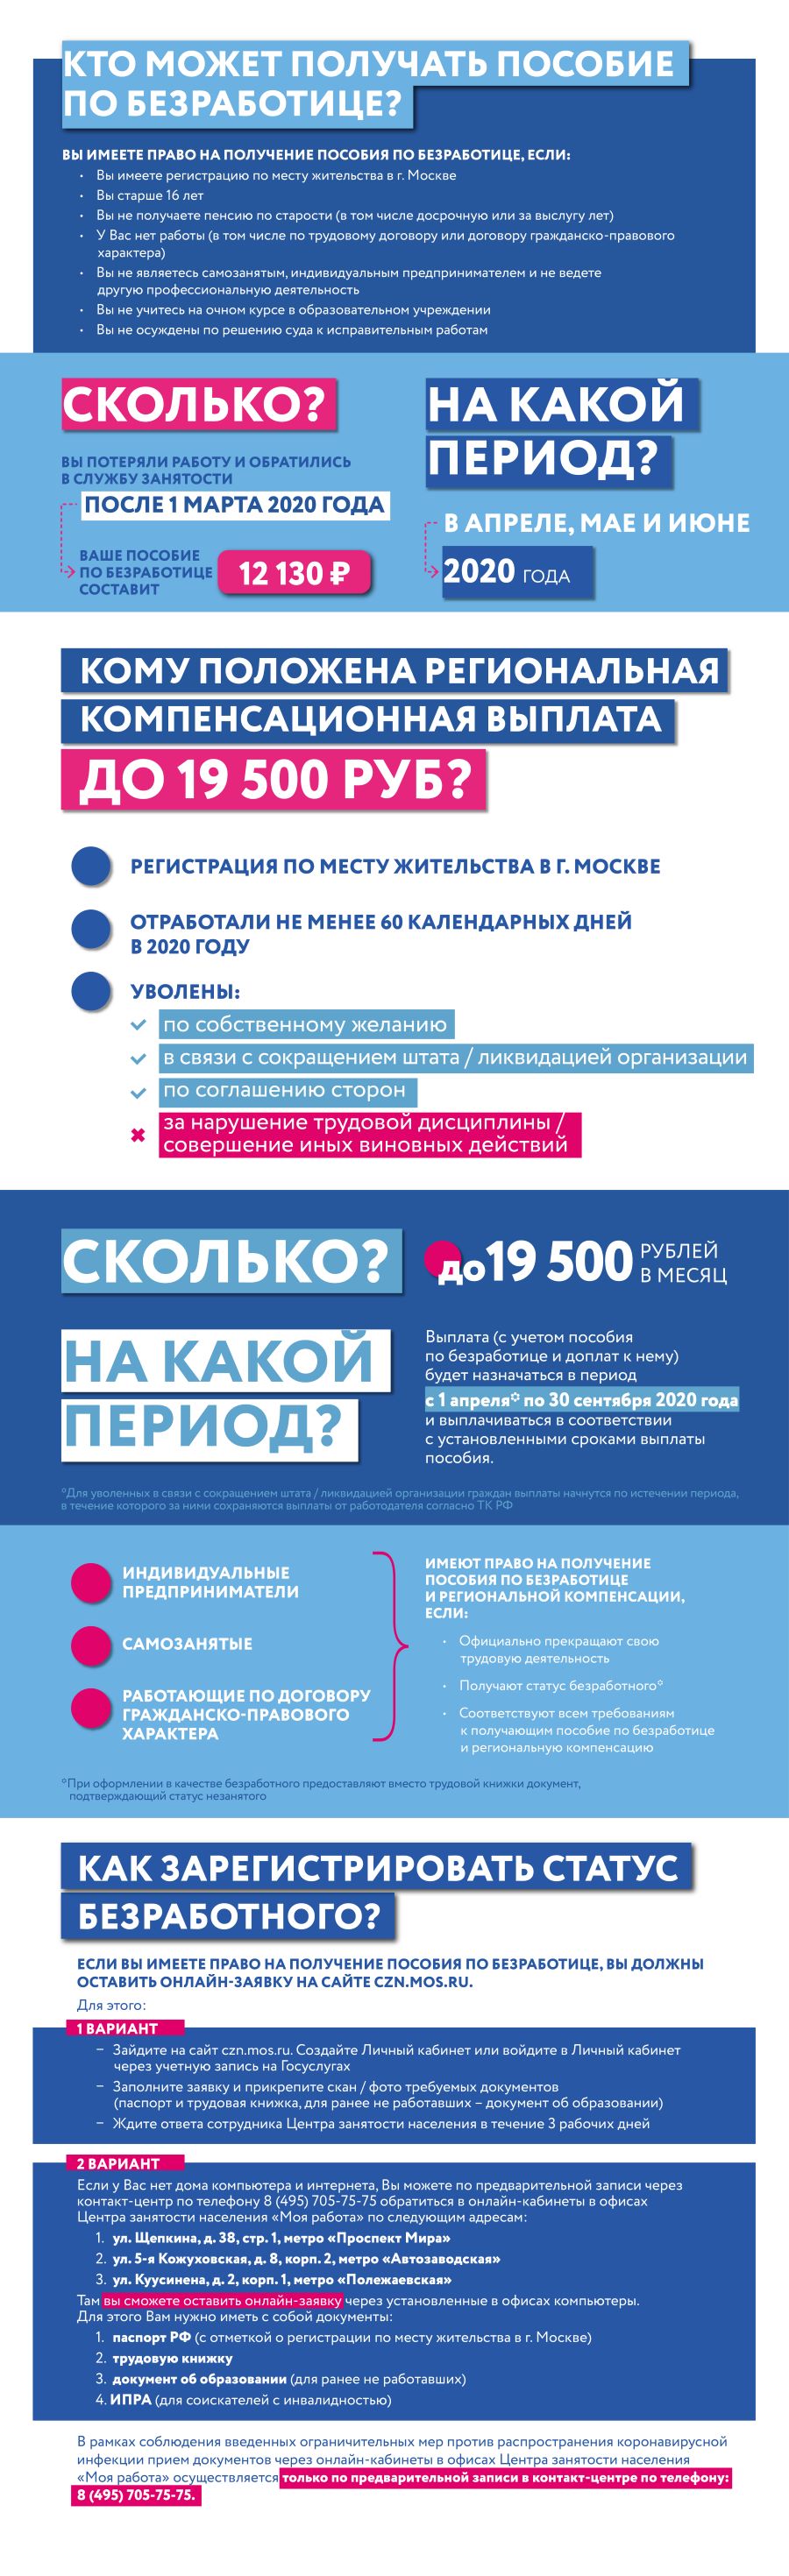 Пособия по безработице 19500 рублей, как получить, кто может претендовать